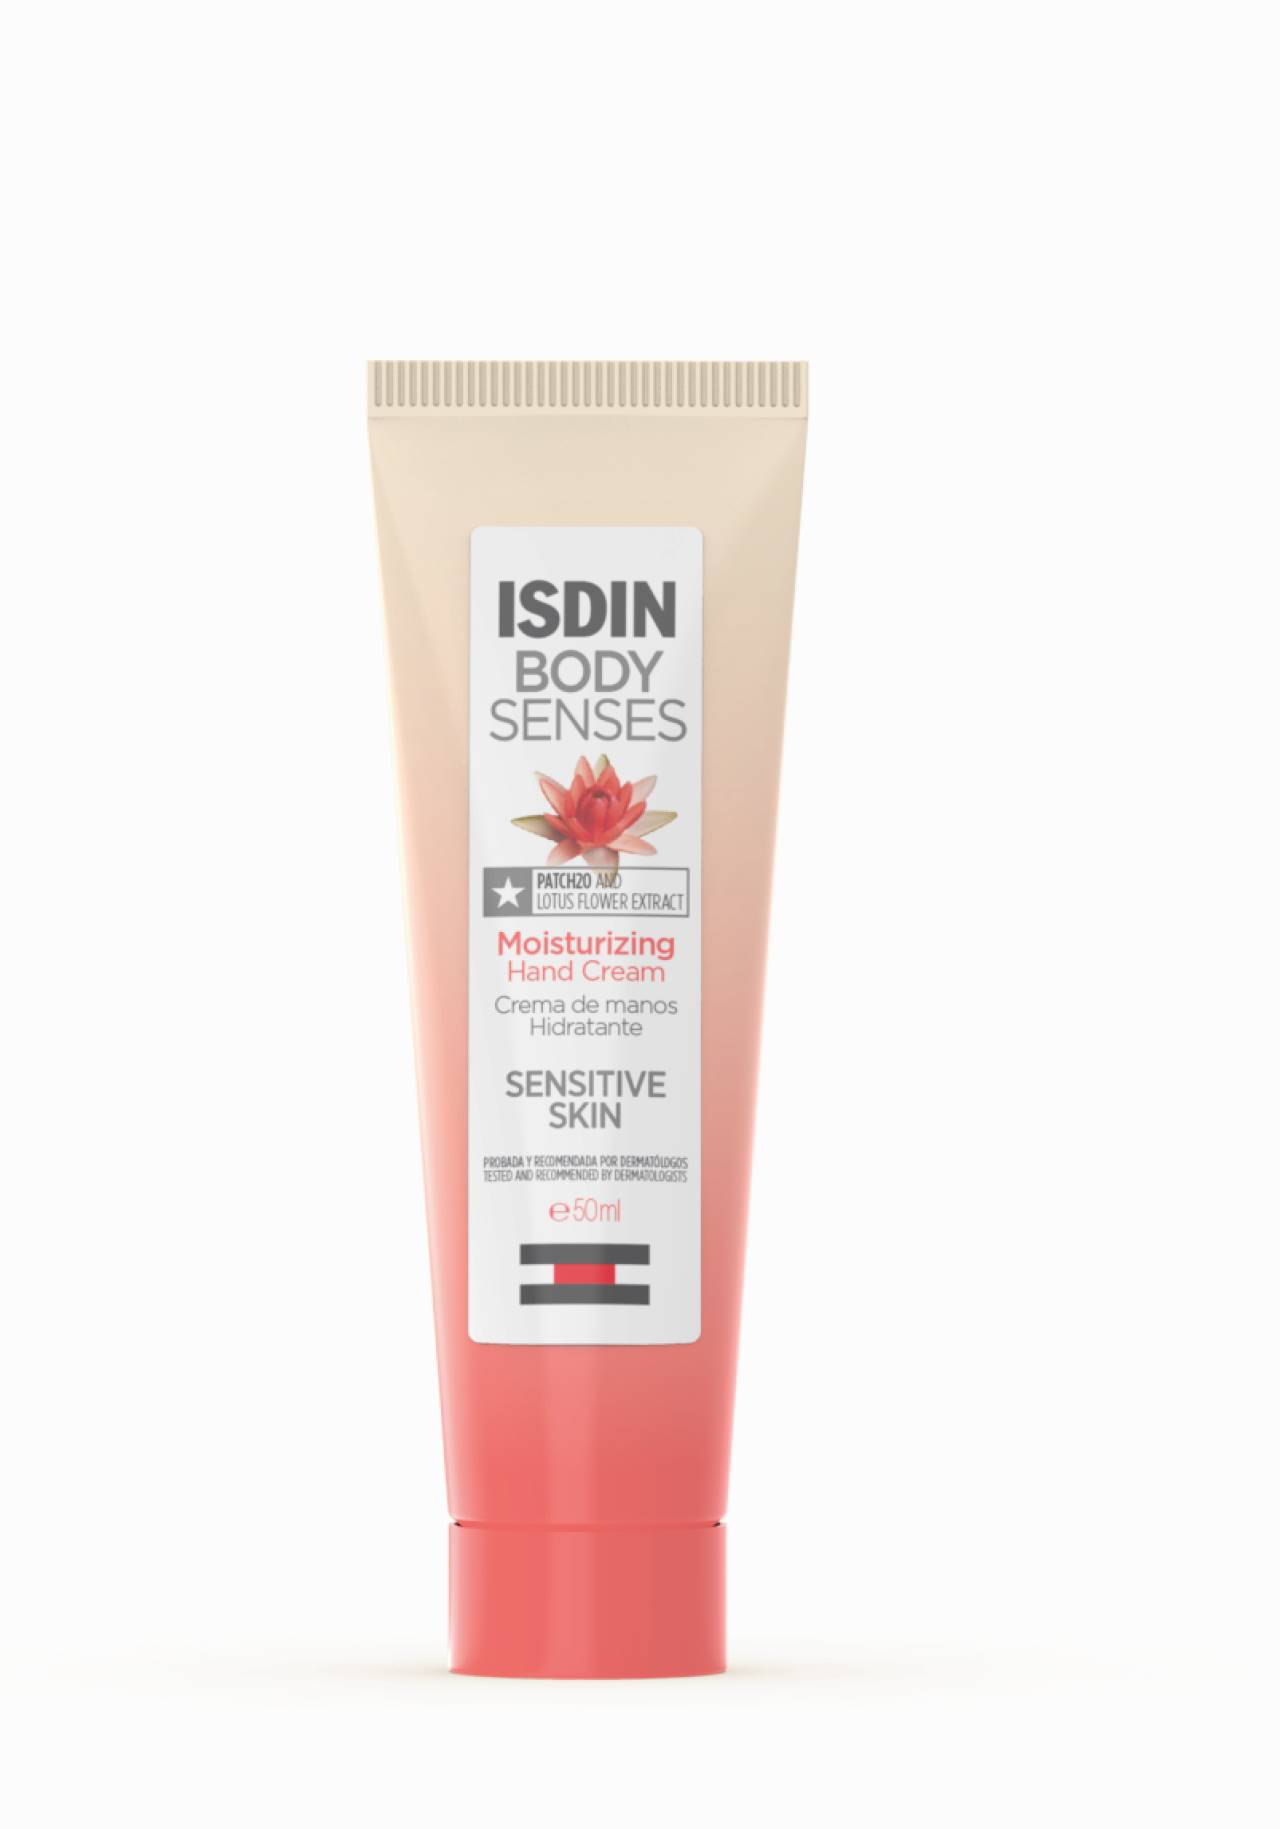 Crema de manso hidratante con extracto de flor de loto de la gama Body Senses de Isdin Protege y cuida tus manos durante la cuarentena